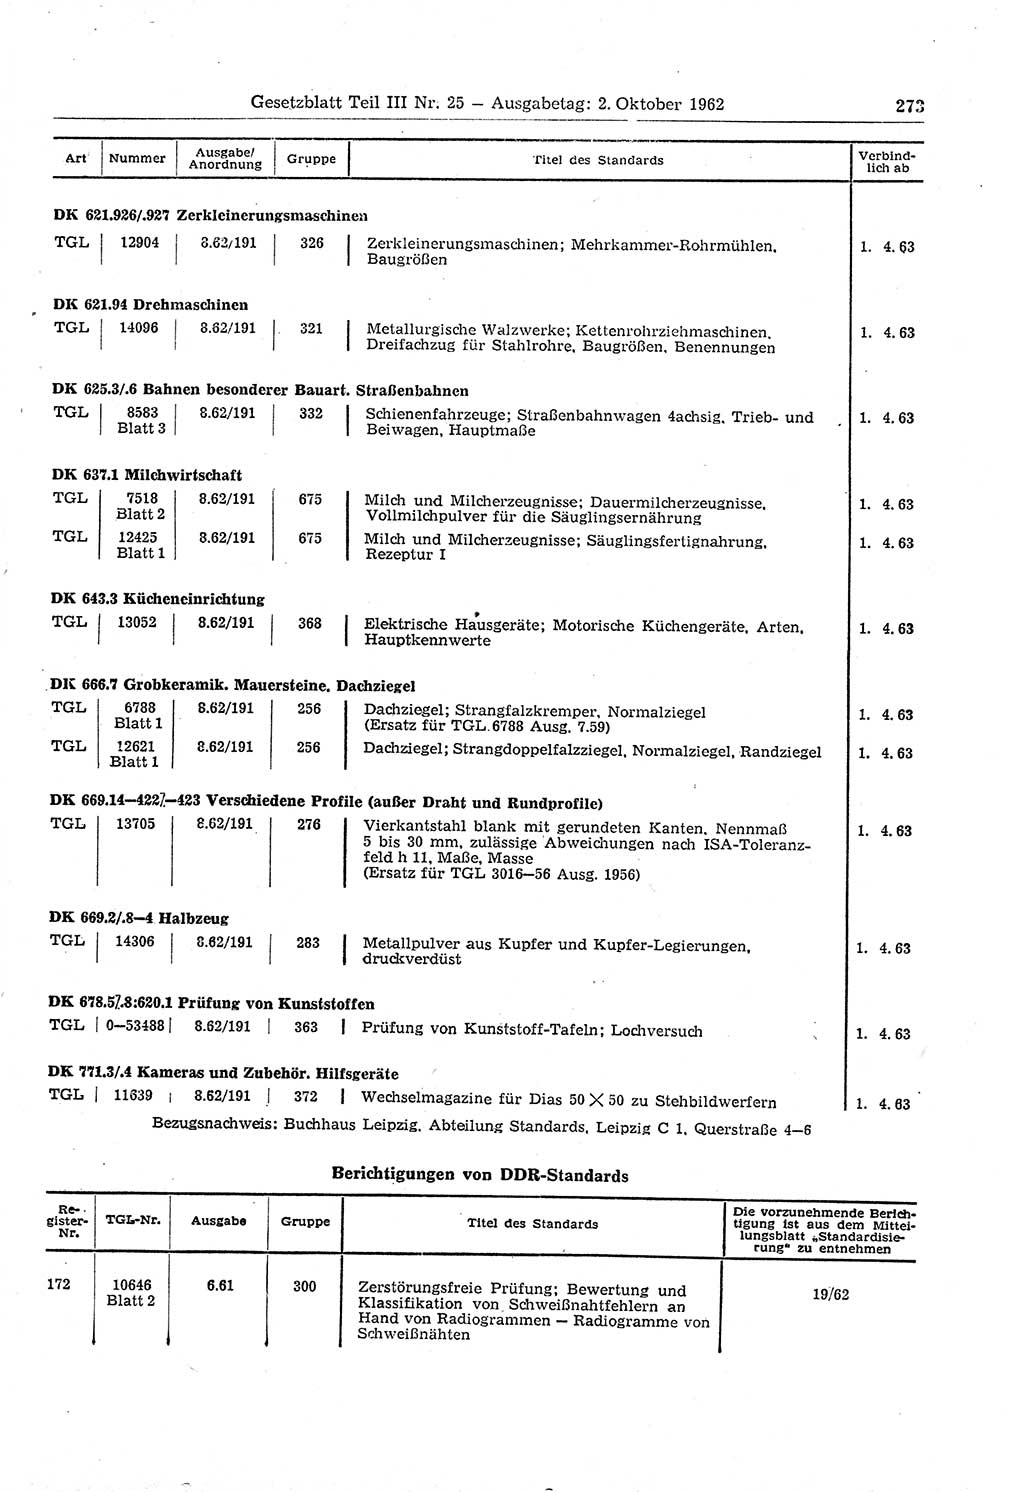 Gesetzblatt (GBl.) der Deutschen Demokratischen Republik (DDR) Teil ⅠⅠⅠ 1962, Seite 273 (GBl. DDR ⅠⅠⅠ 1962, S. 273)